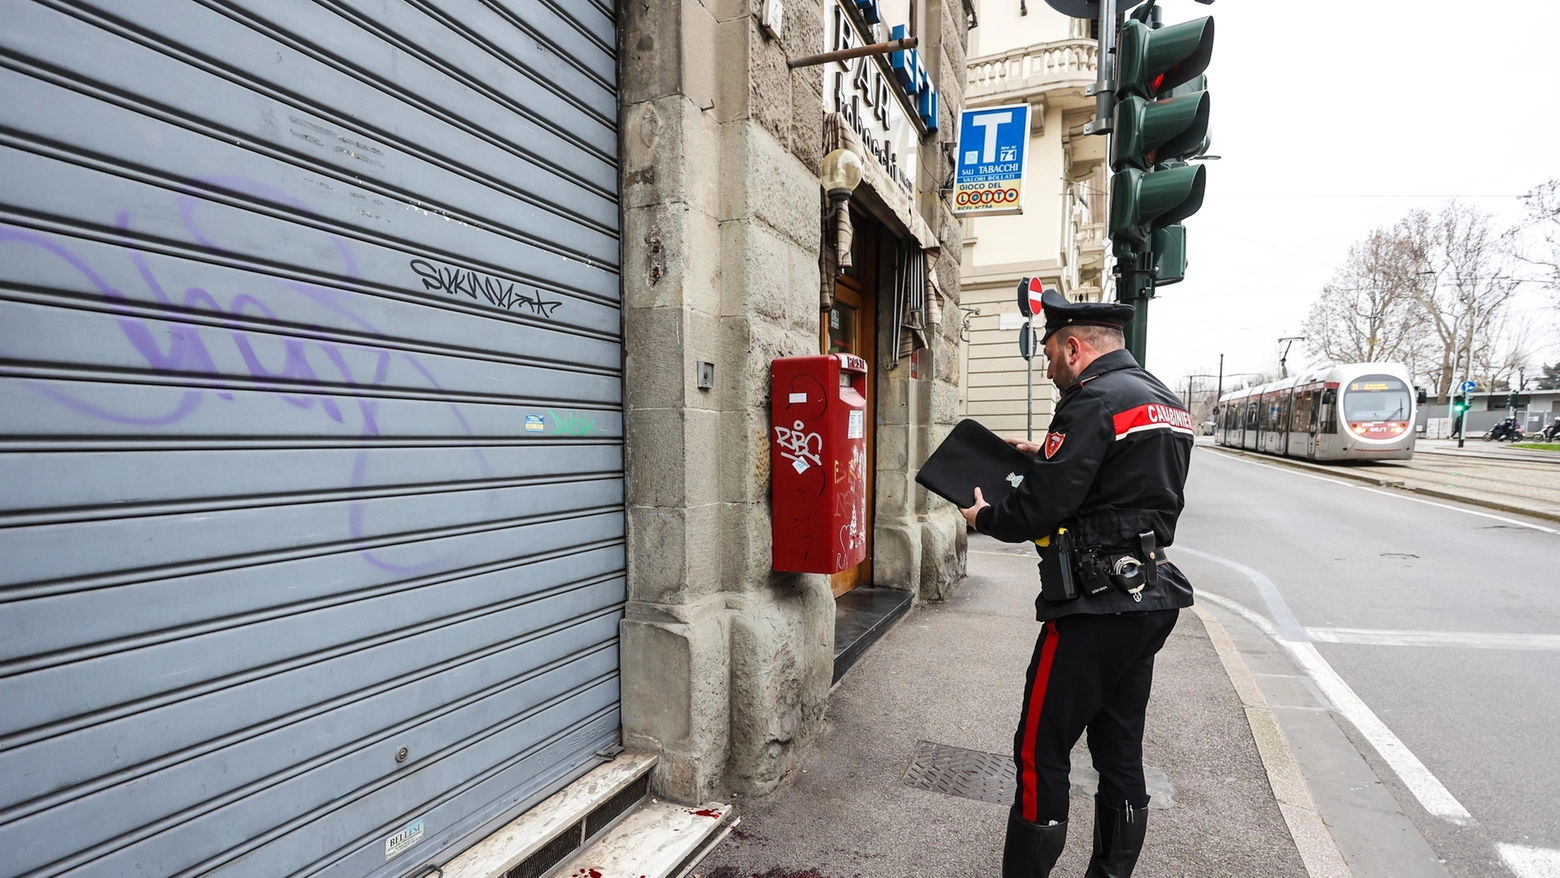 Tentata rapina in via dello Statuto, sul posto i carabinieri (New Press Photo)